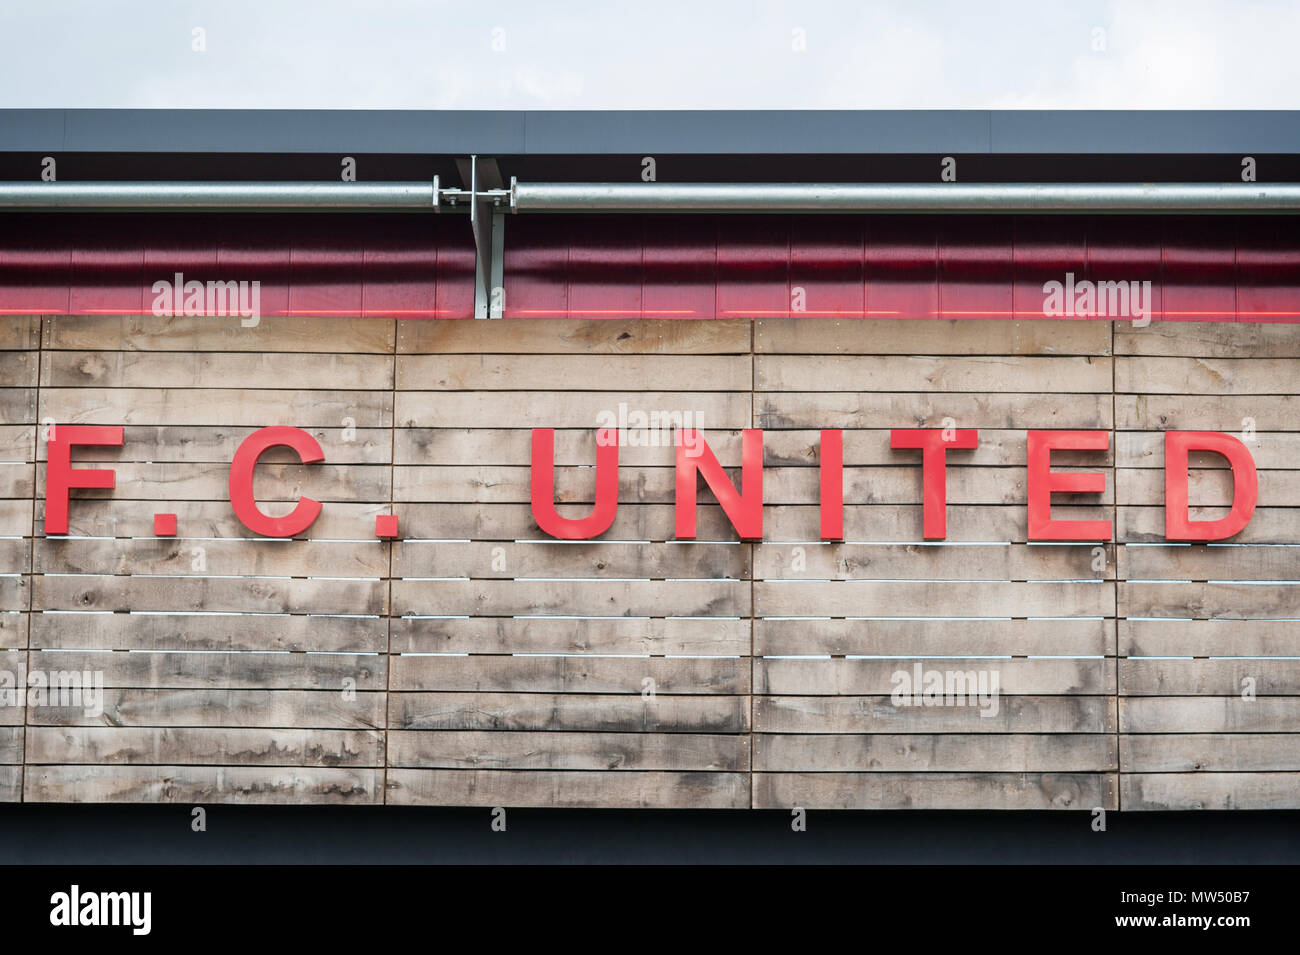 De Manchester United FC. Broadhurst Park Stadium. Banque D'Images